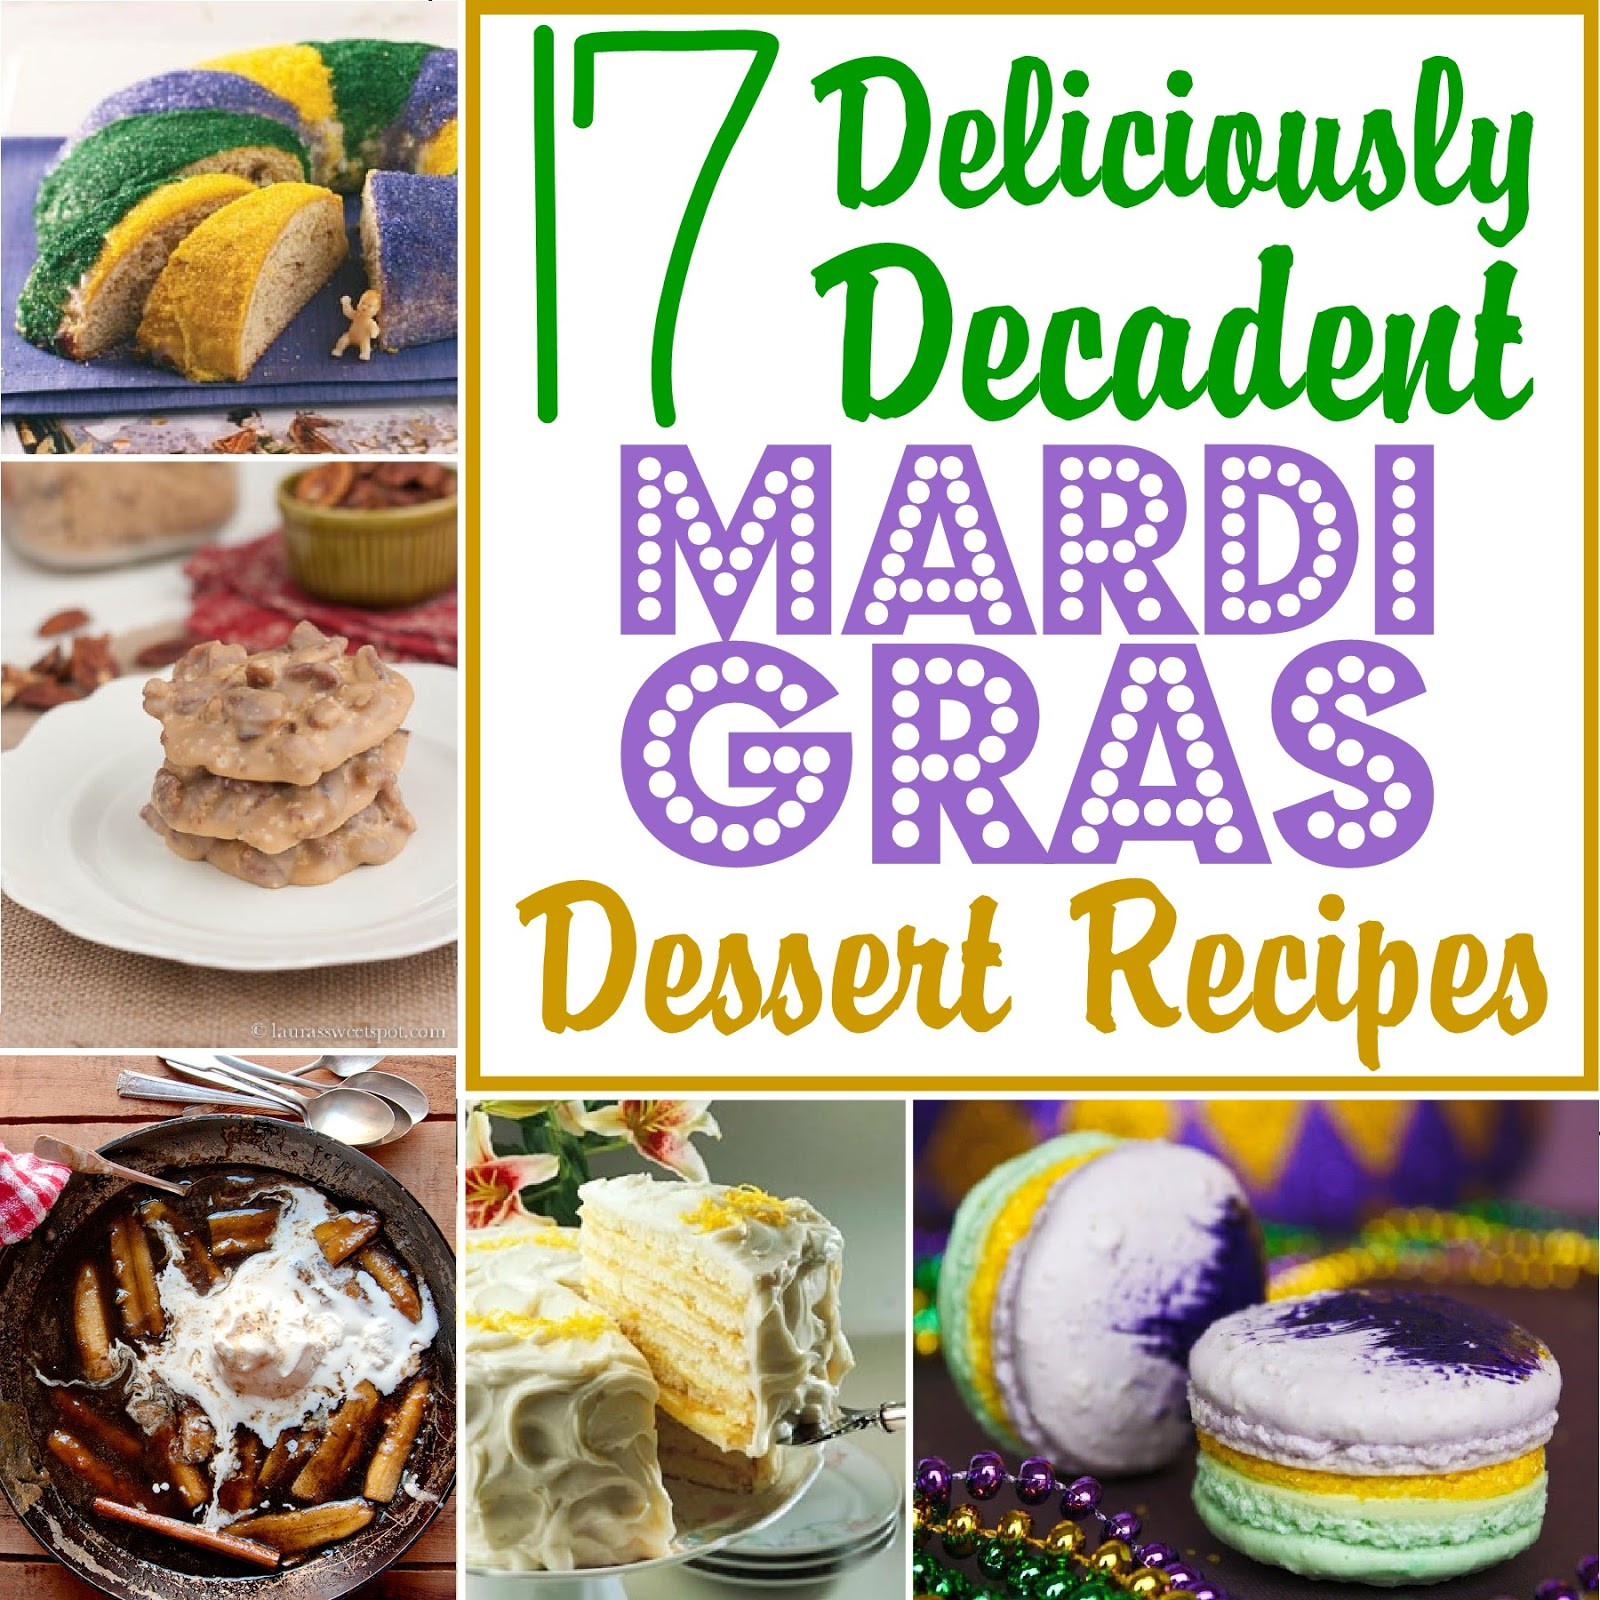 Desserts For Mardi Gras
 17 Deliciously Decadent Mardi Gras Dessert Recipes The